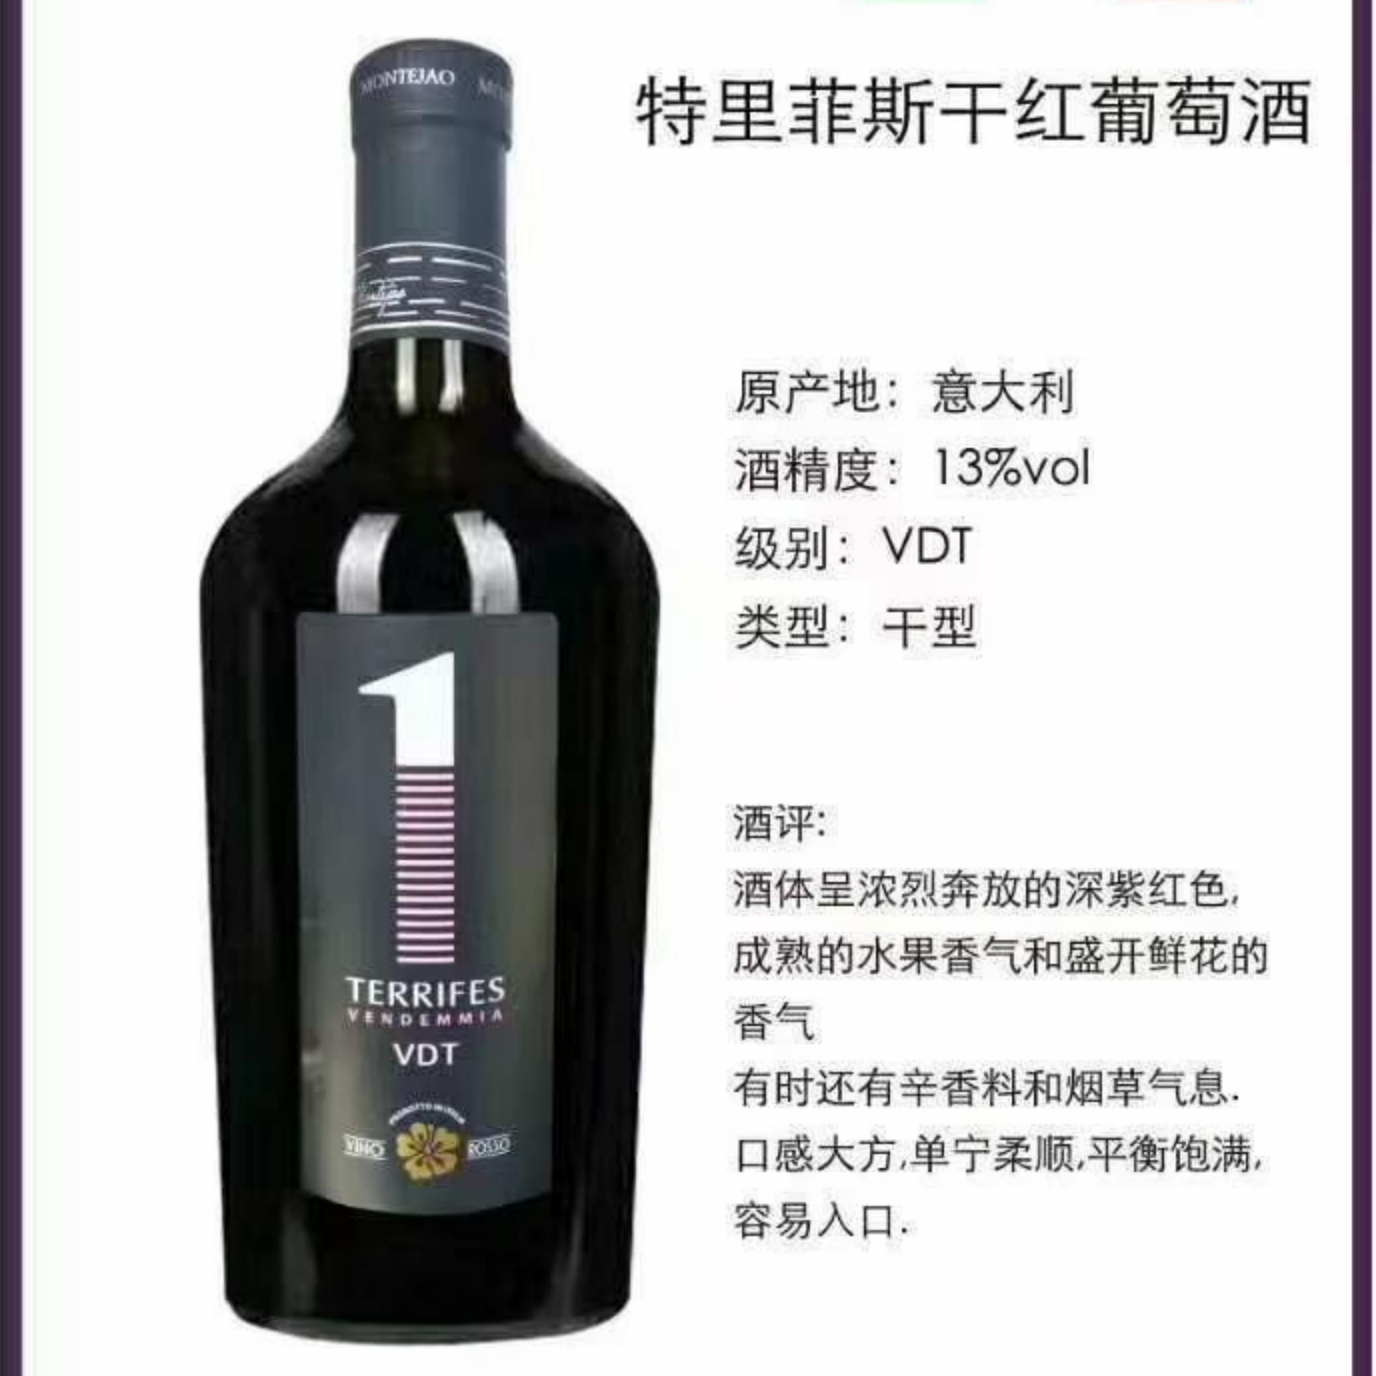 上海万耀意大利进口小胖瓶系列特里菲斯干红葡萄酒红酒VDT级别进口红酒加盟代理